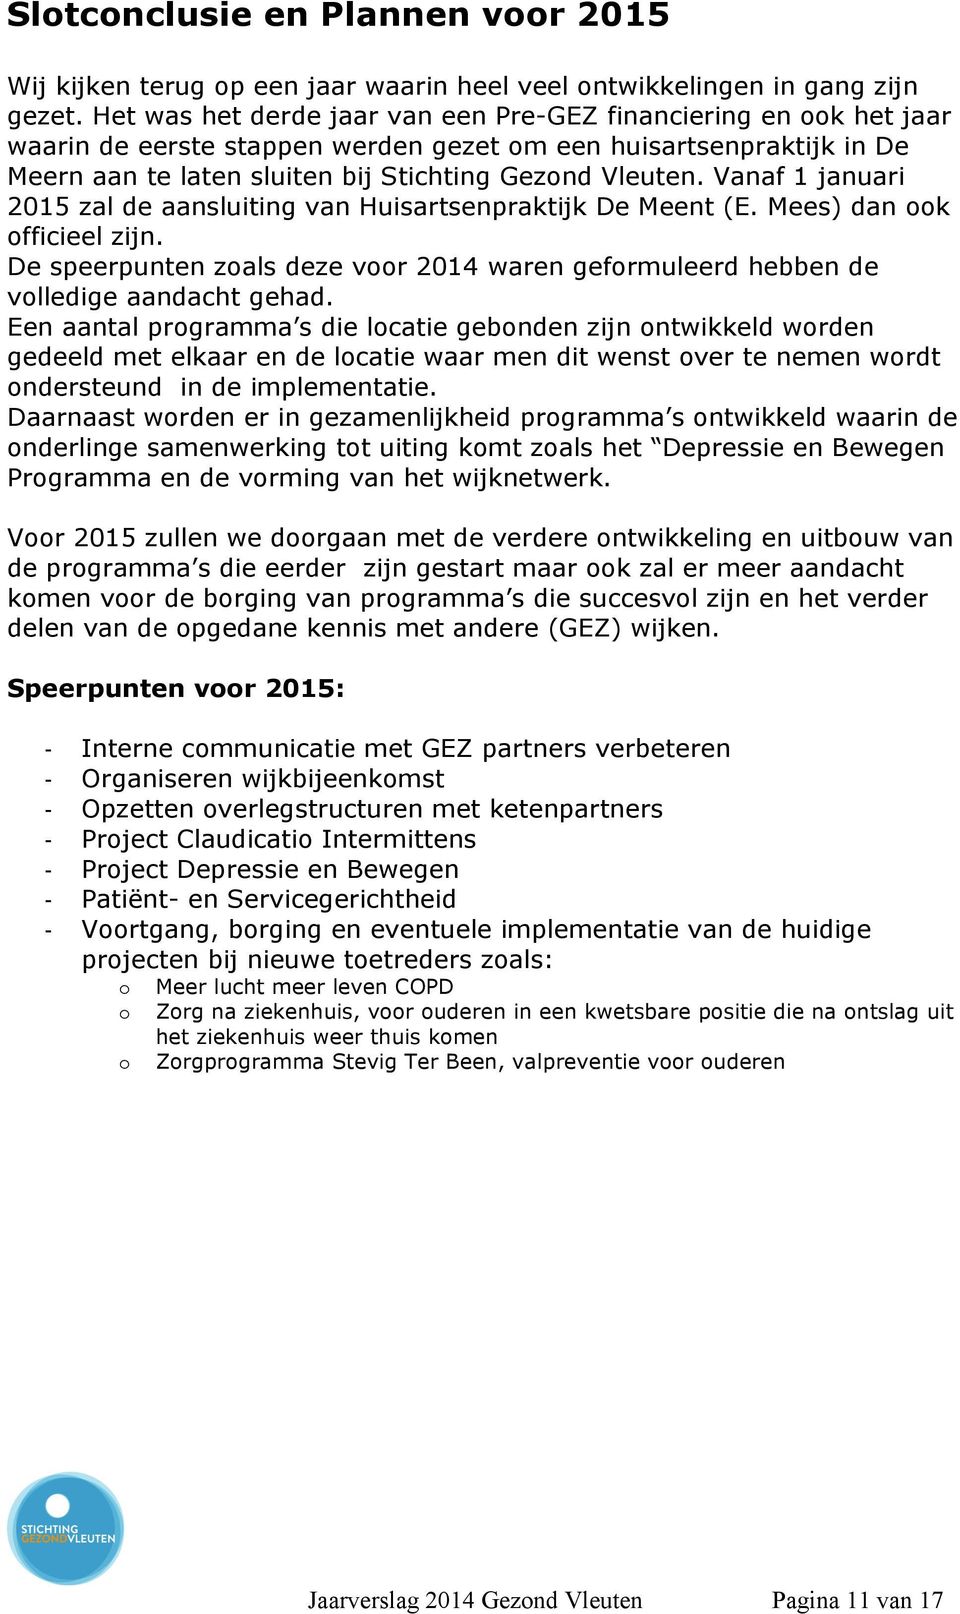 Vanaf 1 januari 2015 zal de aansluiting van Huisartsenpraktijk De Meent (E. Mees) dan ook officieel zijn. De speerpunten zoals deze voor 2014 waren geformuleerd hebben de volledige aandacht gehad.